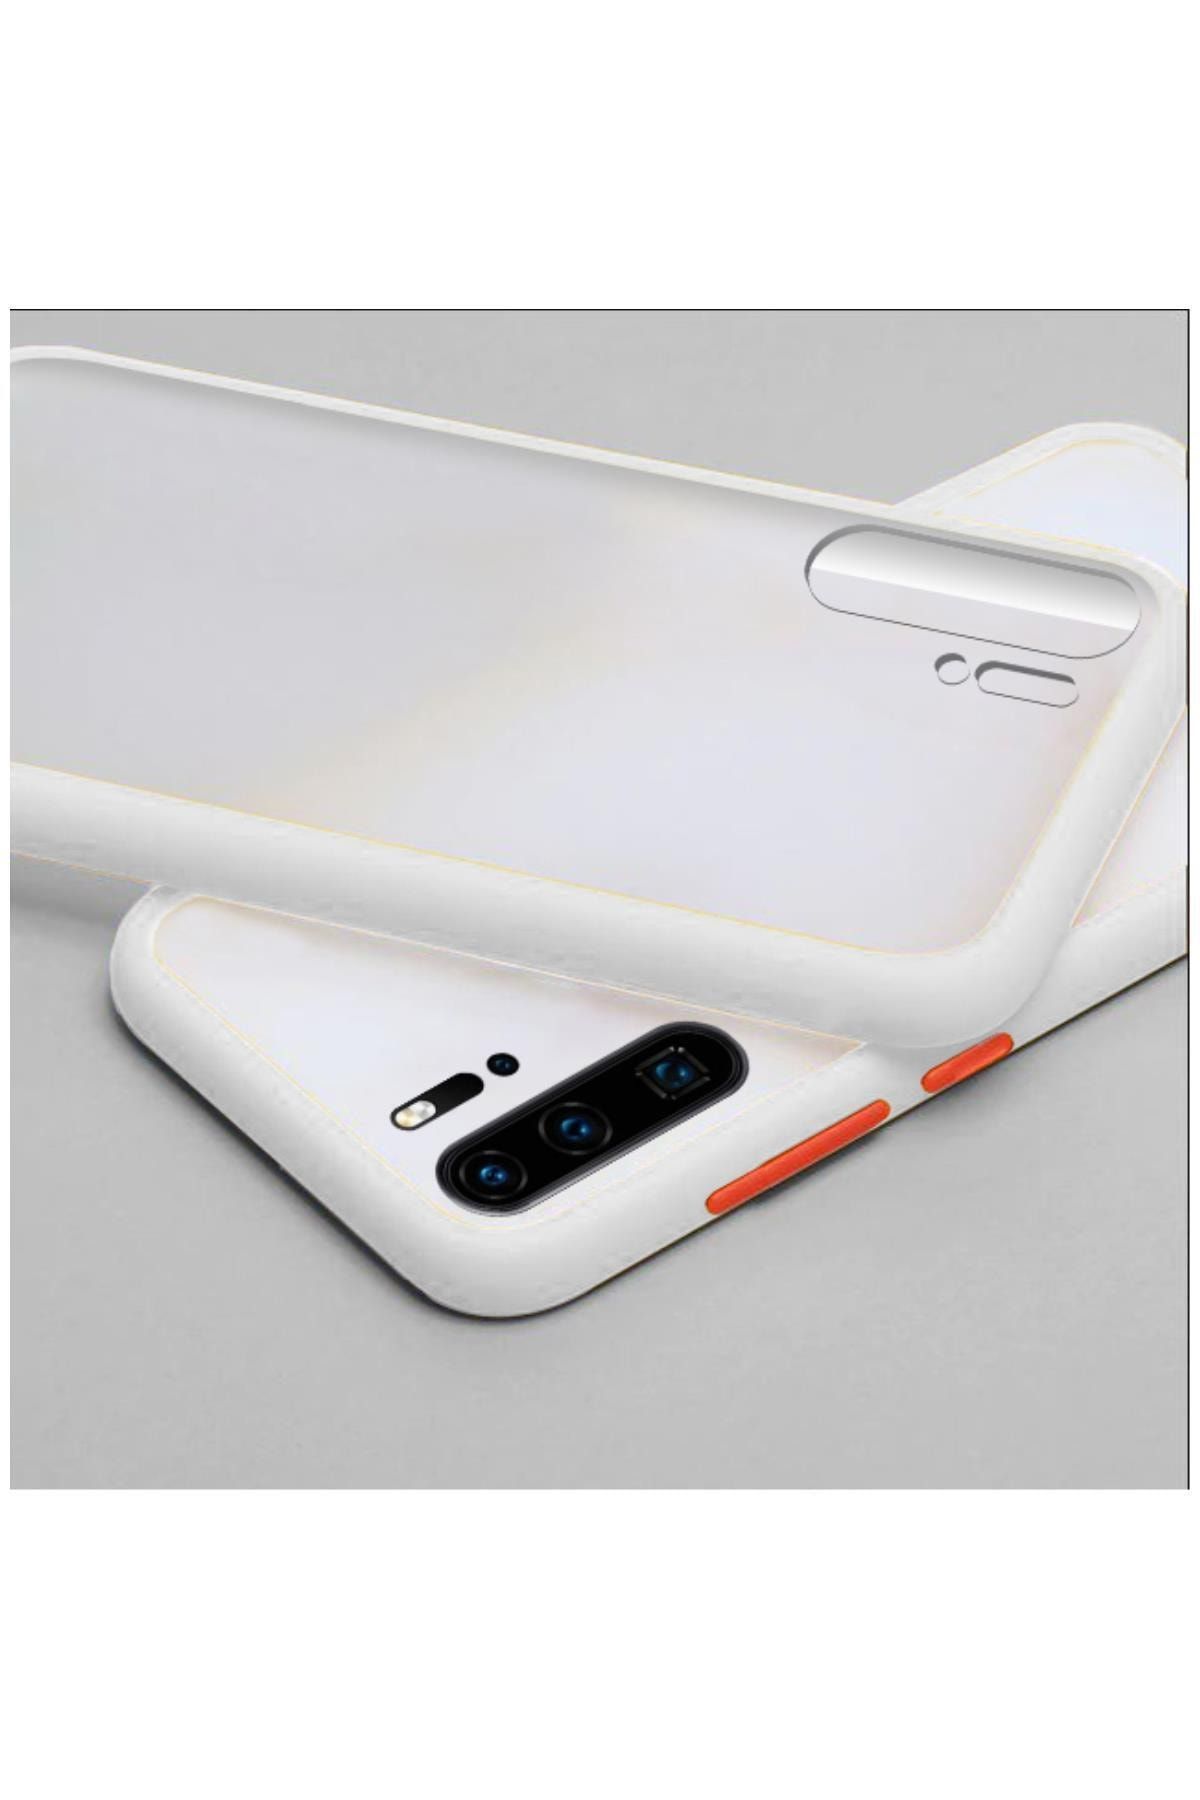 Dara Aksesuar Huawei P30 Pro Uyumlu Telefon Kılıfı Zebana Stylish Silikon Kenar Kılıf Beyaz